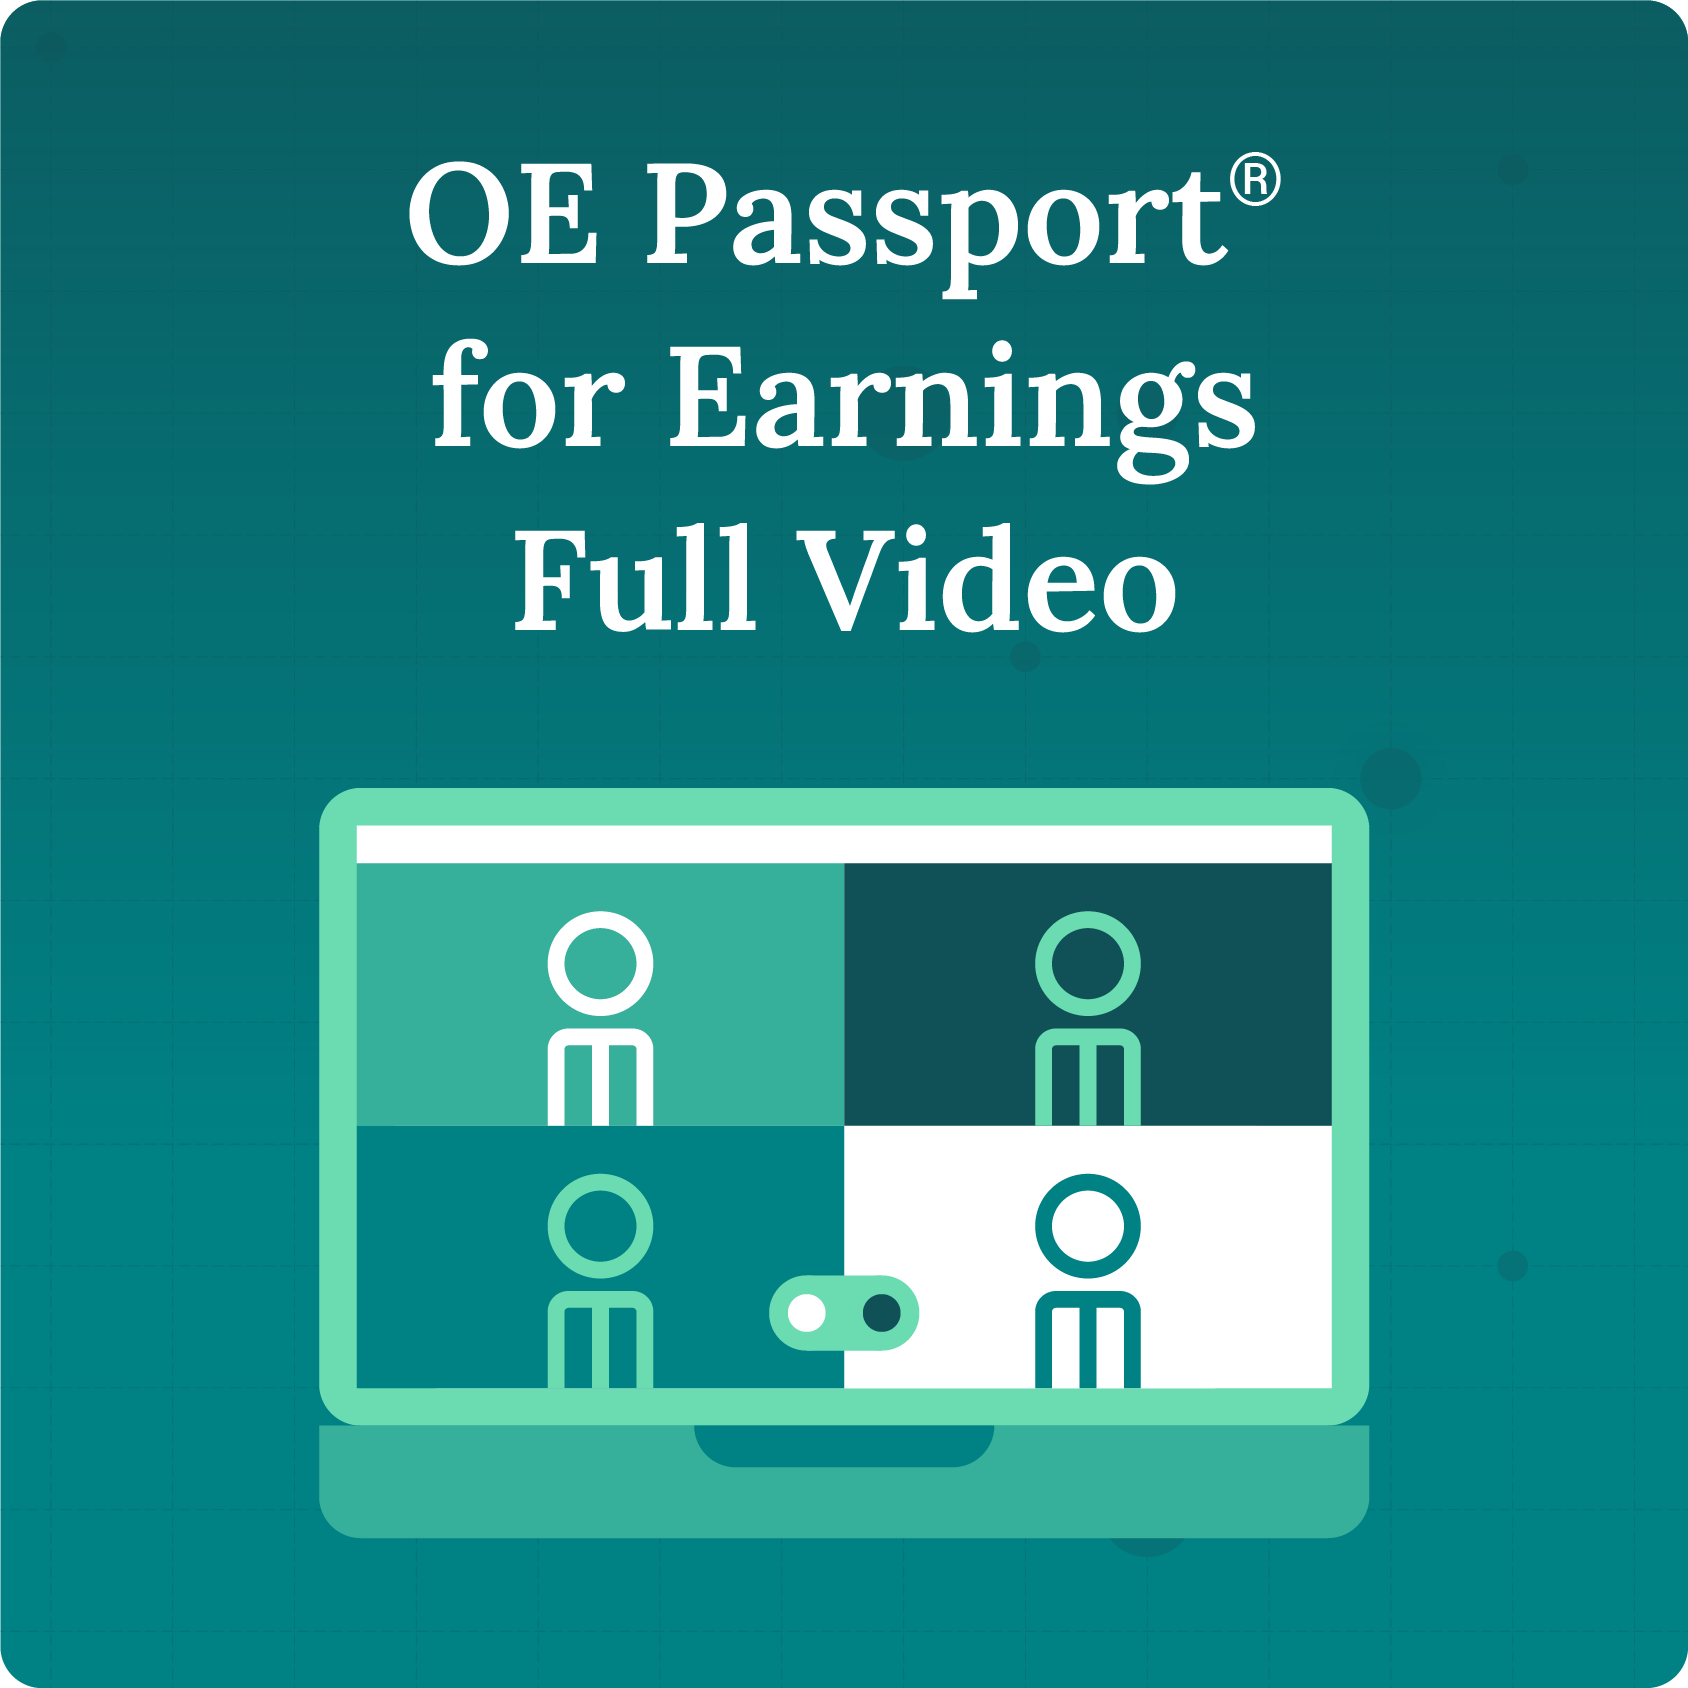 OE Passport for Earnings Full Video